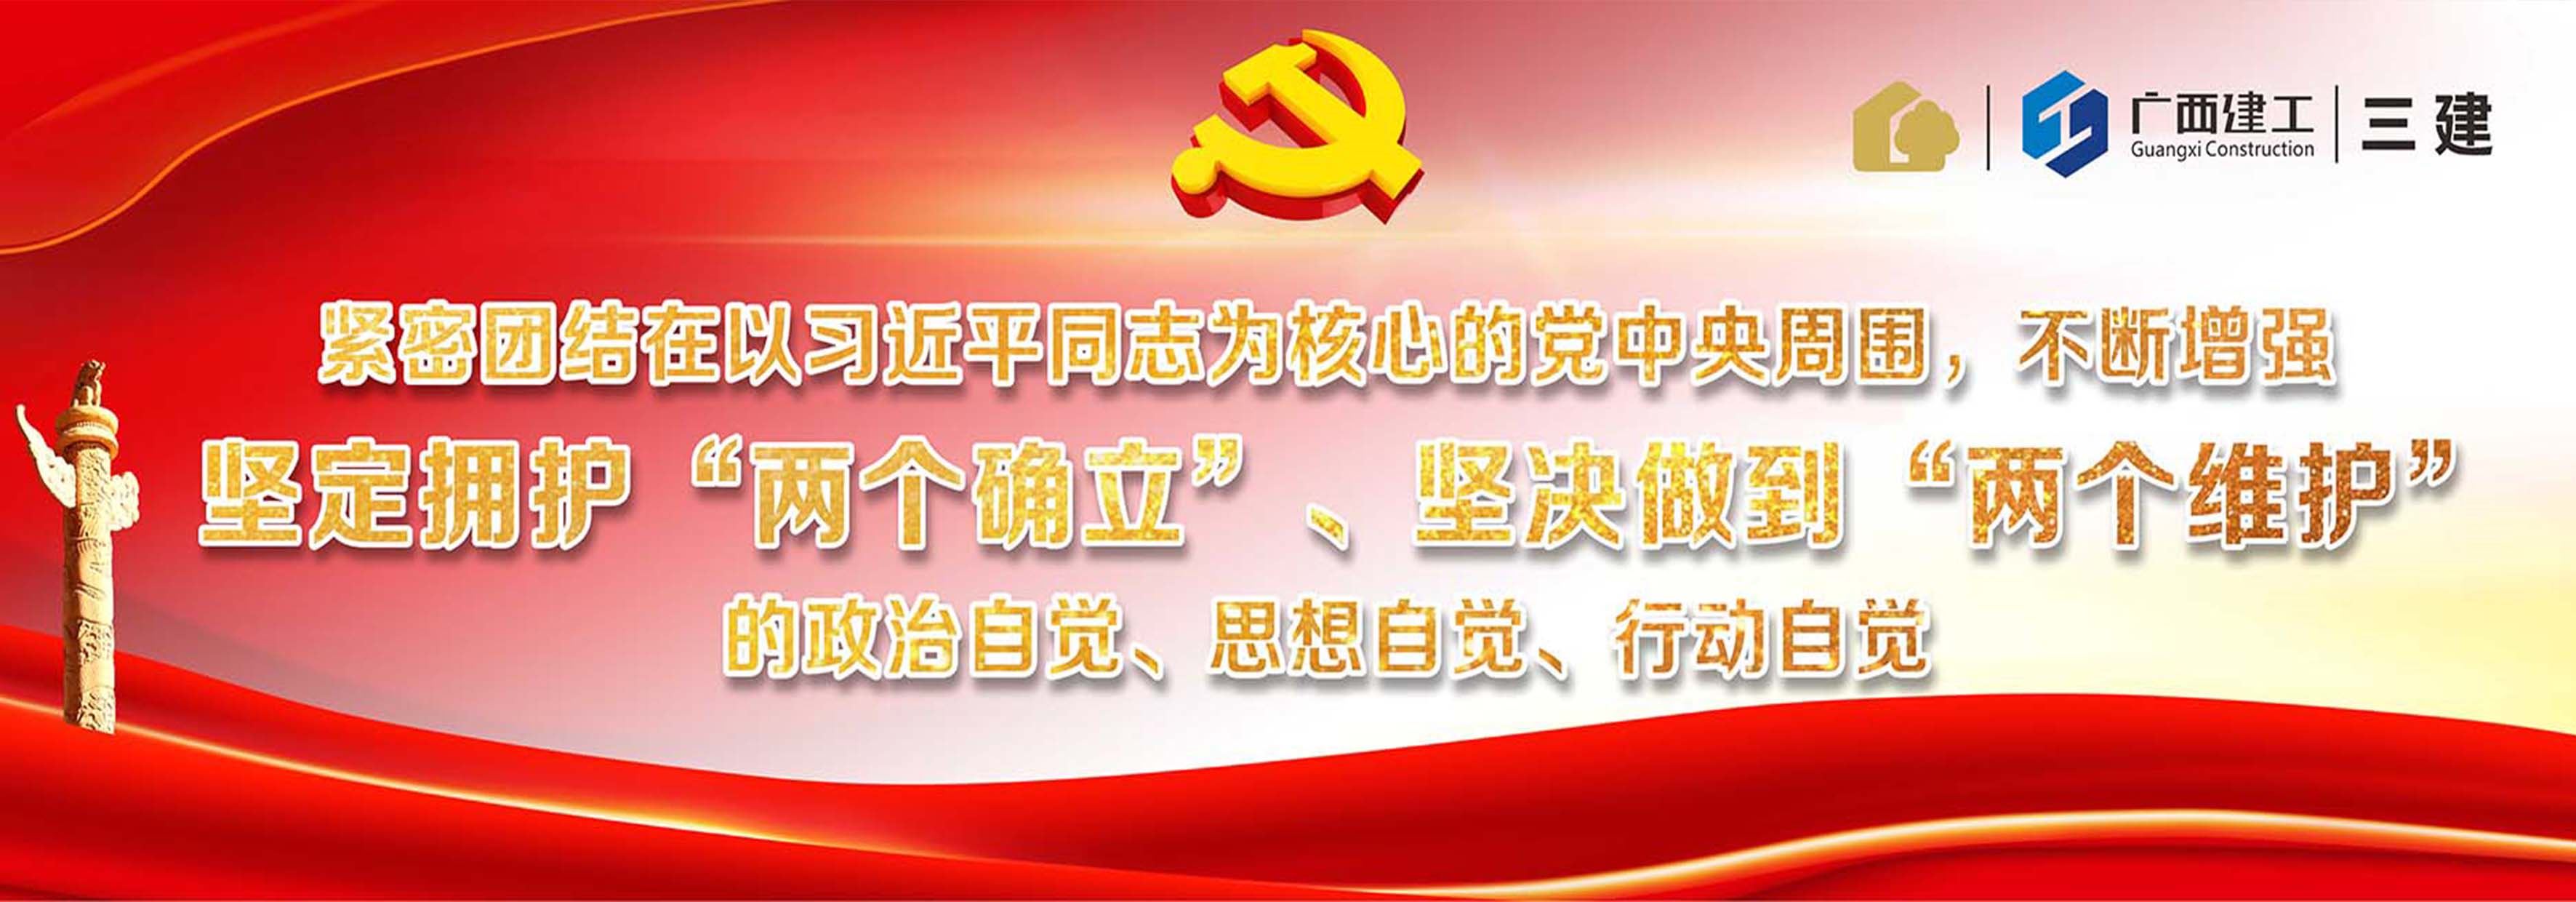 免费pg电子试玩(中国)集团官方网广告图